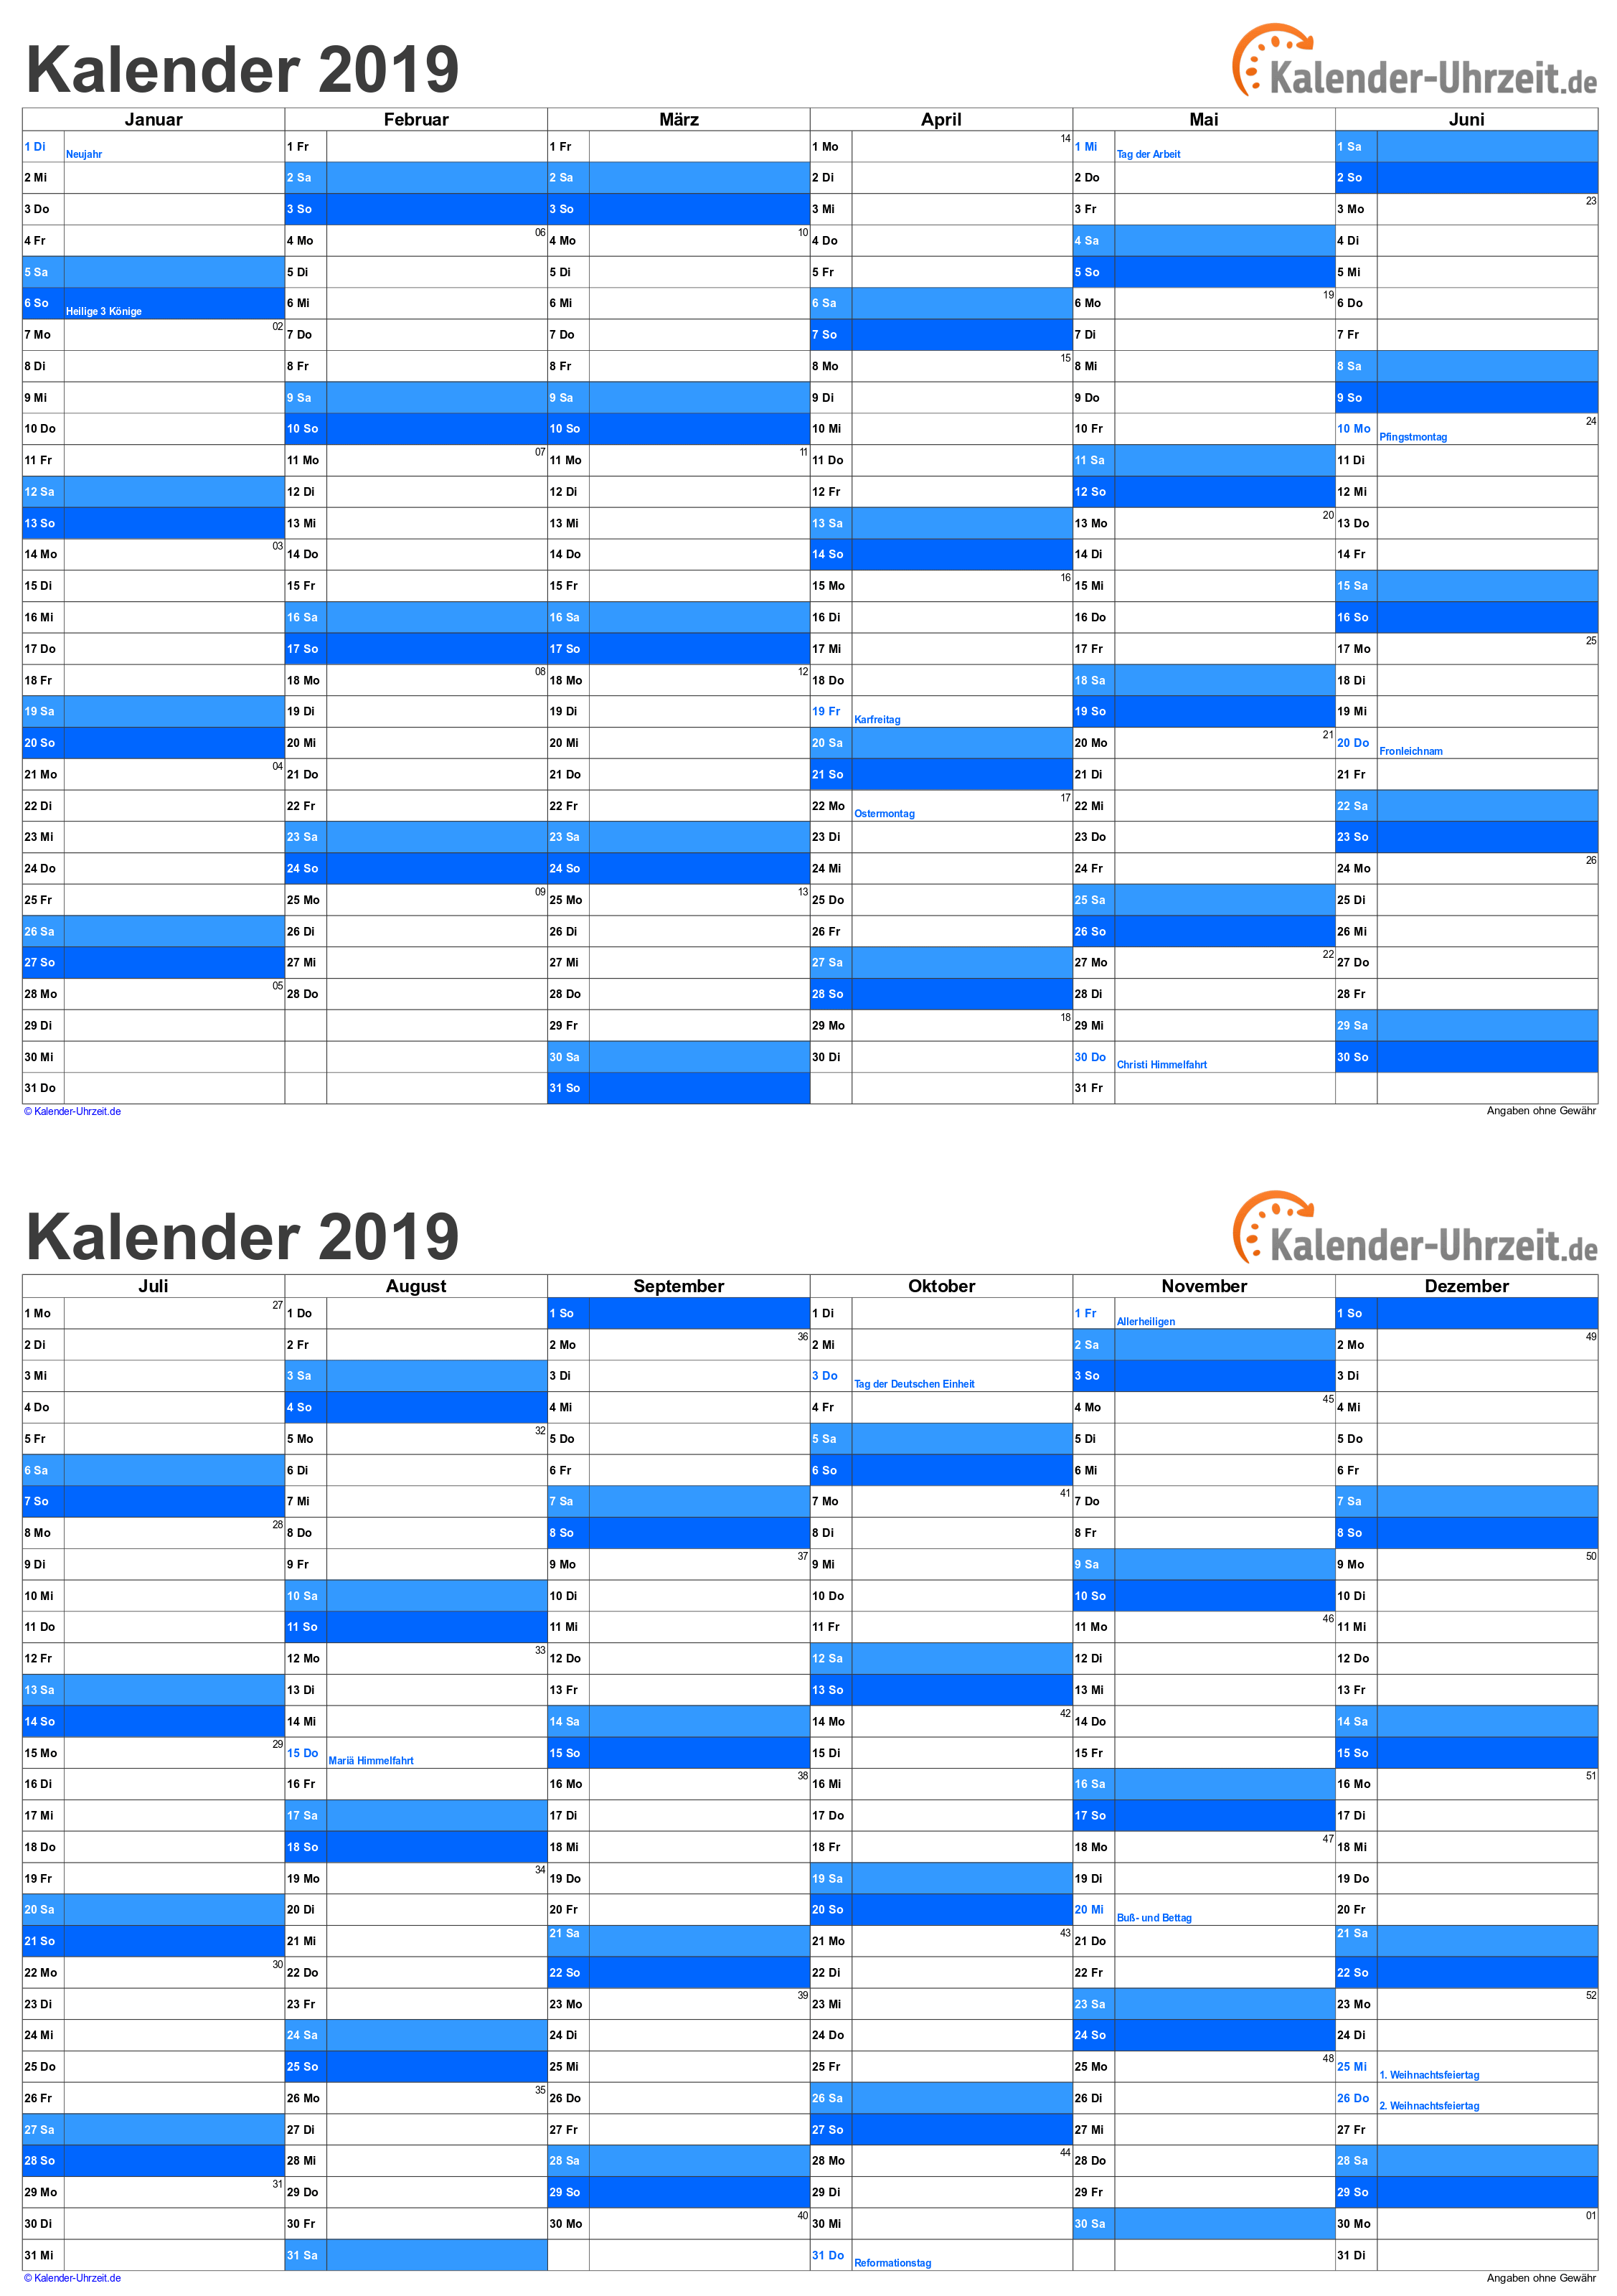 Kalender 2019 Zum Ausdrucken Gratis Vorlagen Zum Download Ausdrucken Kalender Vorlagen